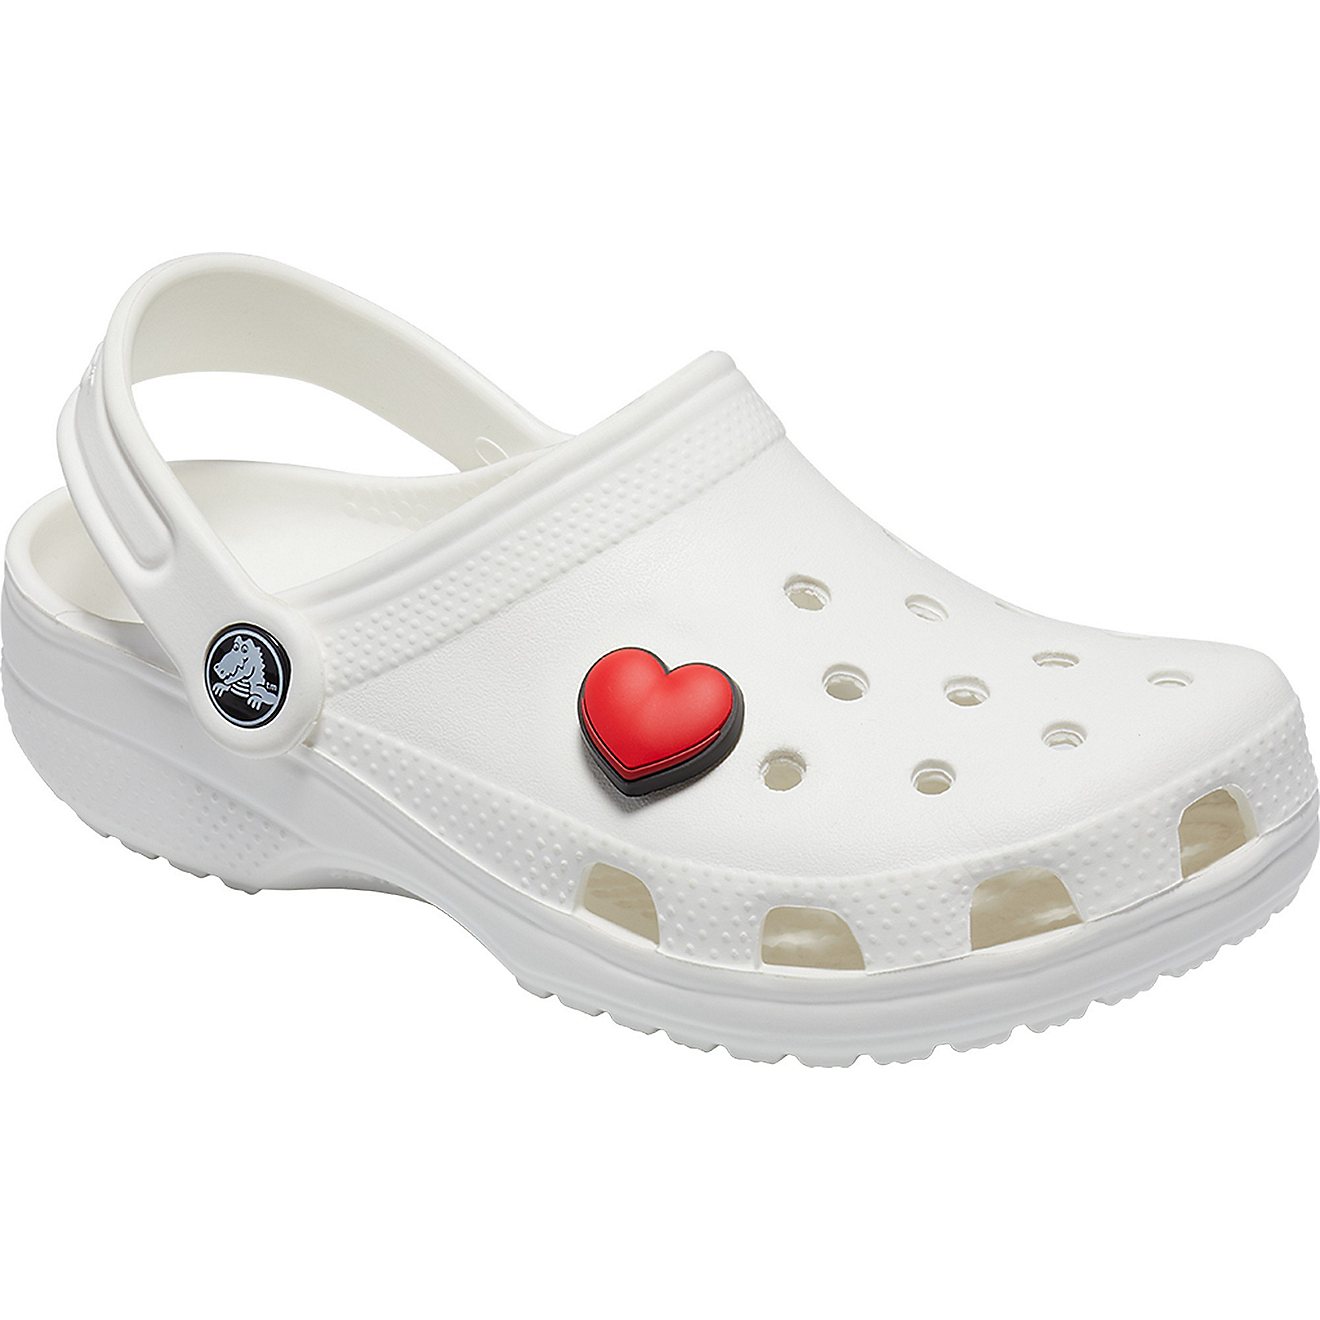 Multicolour Crocs Heart Shoe Decoration Charms - One Size 